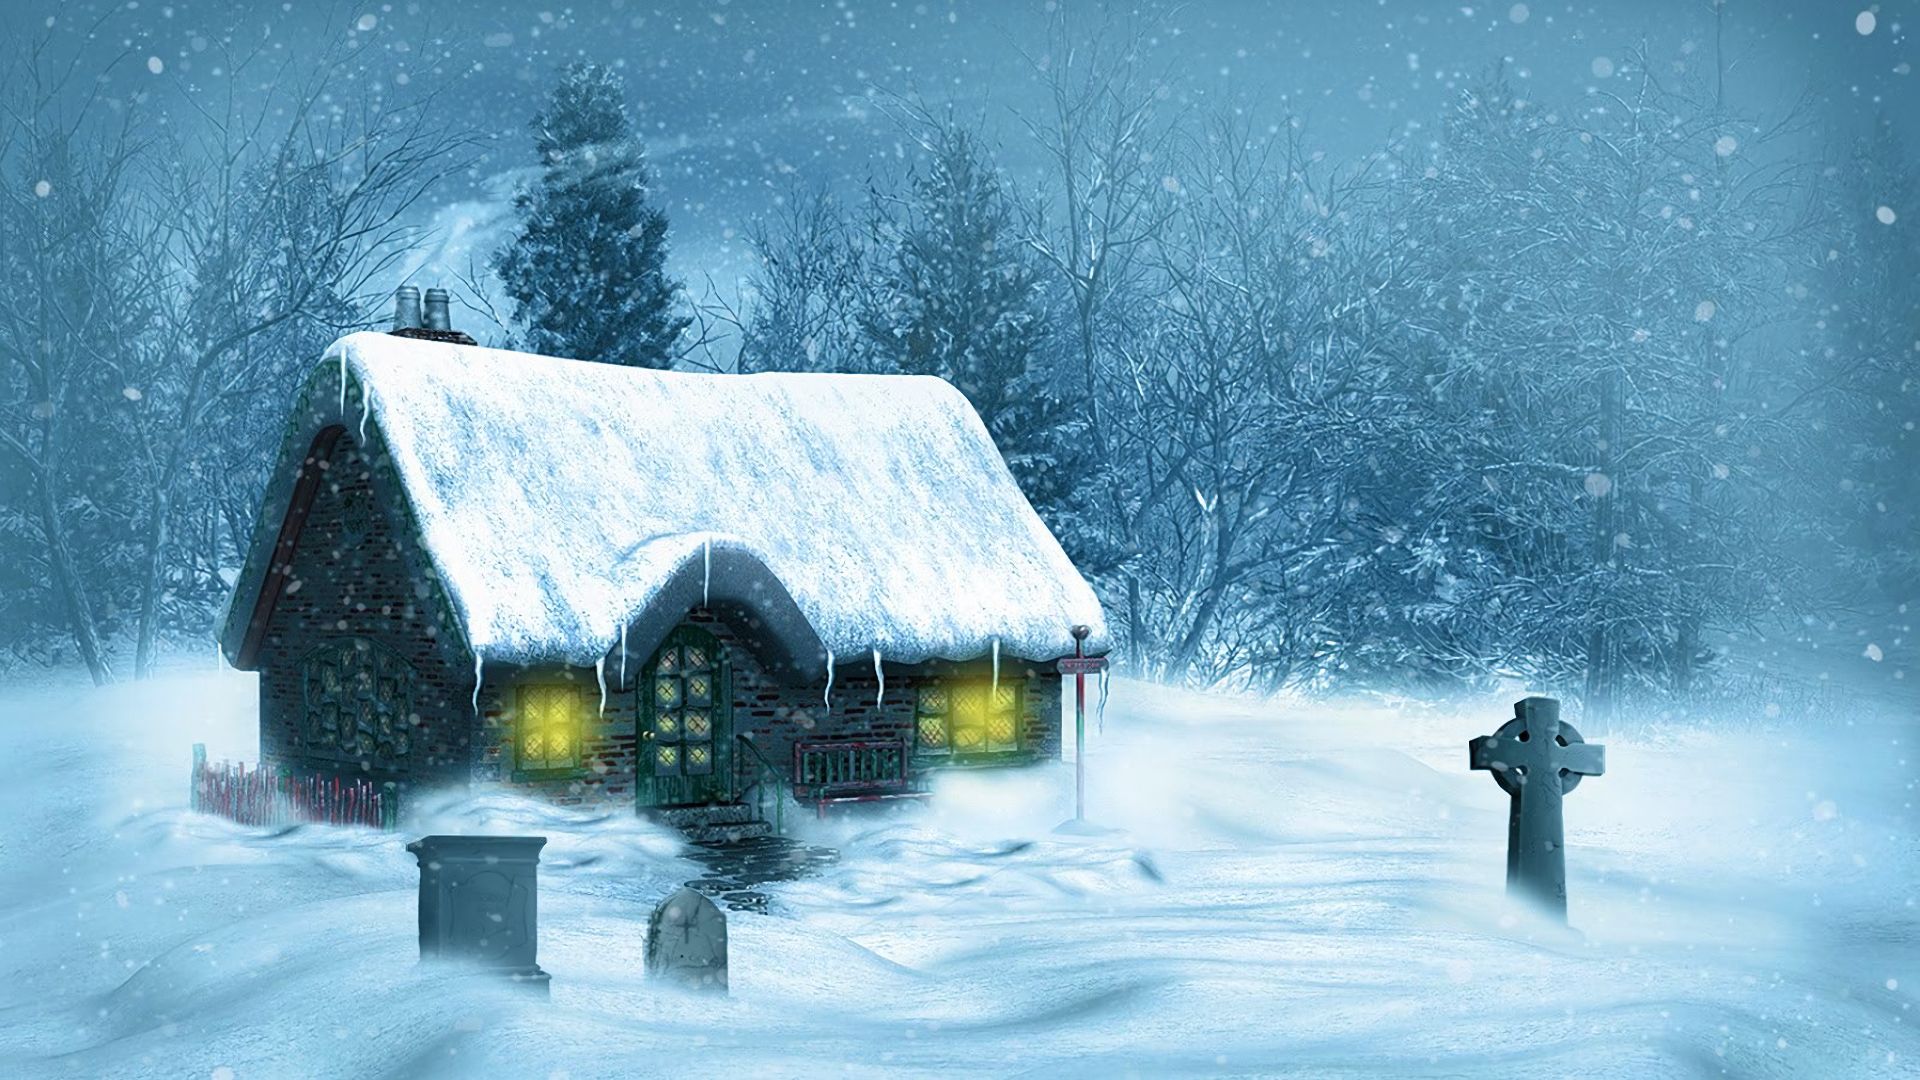 Скачать картинку Зима, Снег, Дерево, Дом, Снегопад, Коттедж, Художественные, Кельтский Крест в телефон бесплатно.